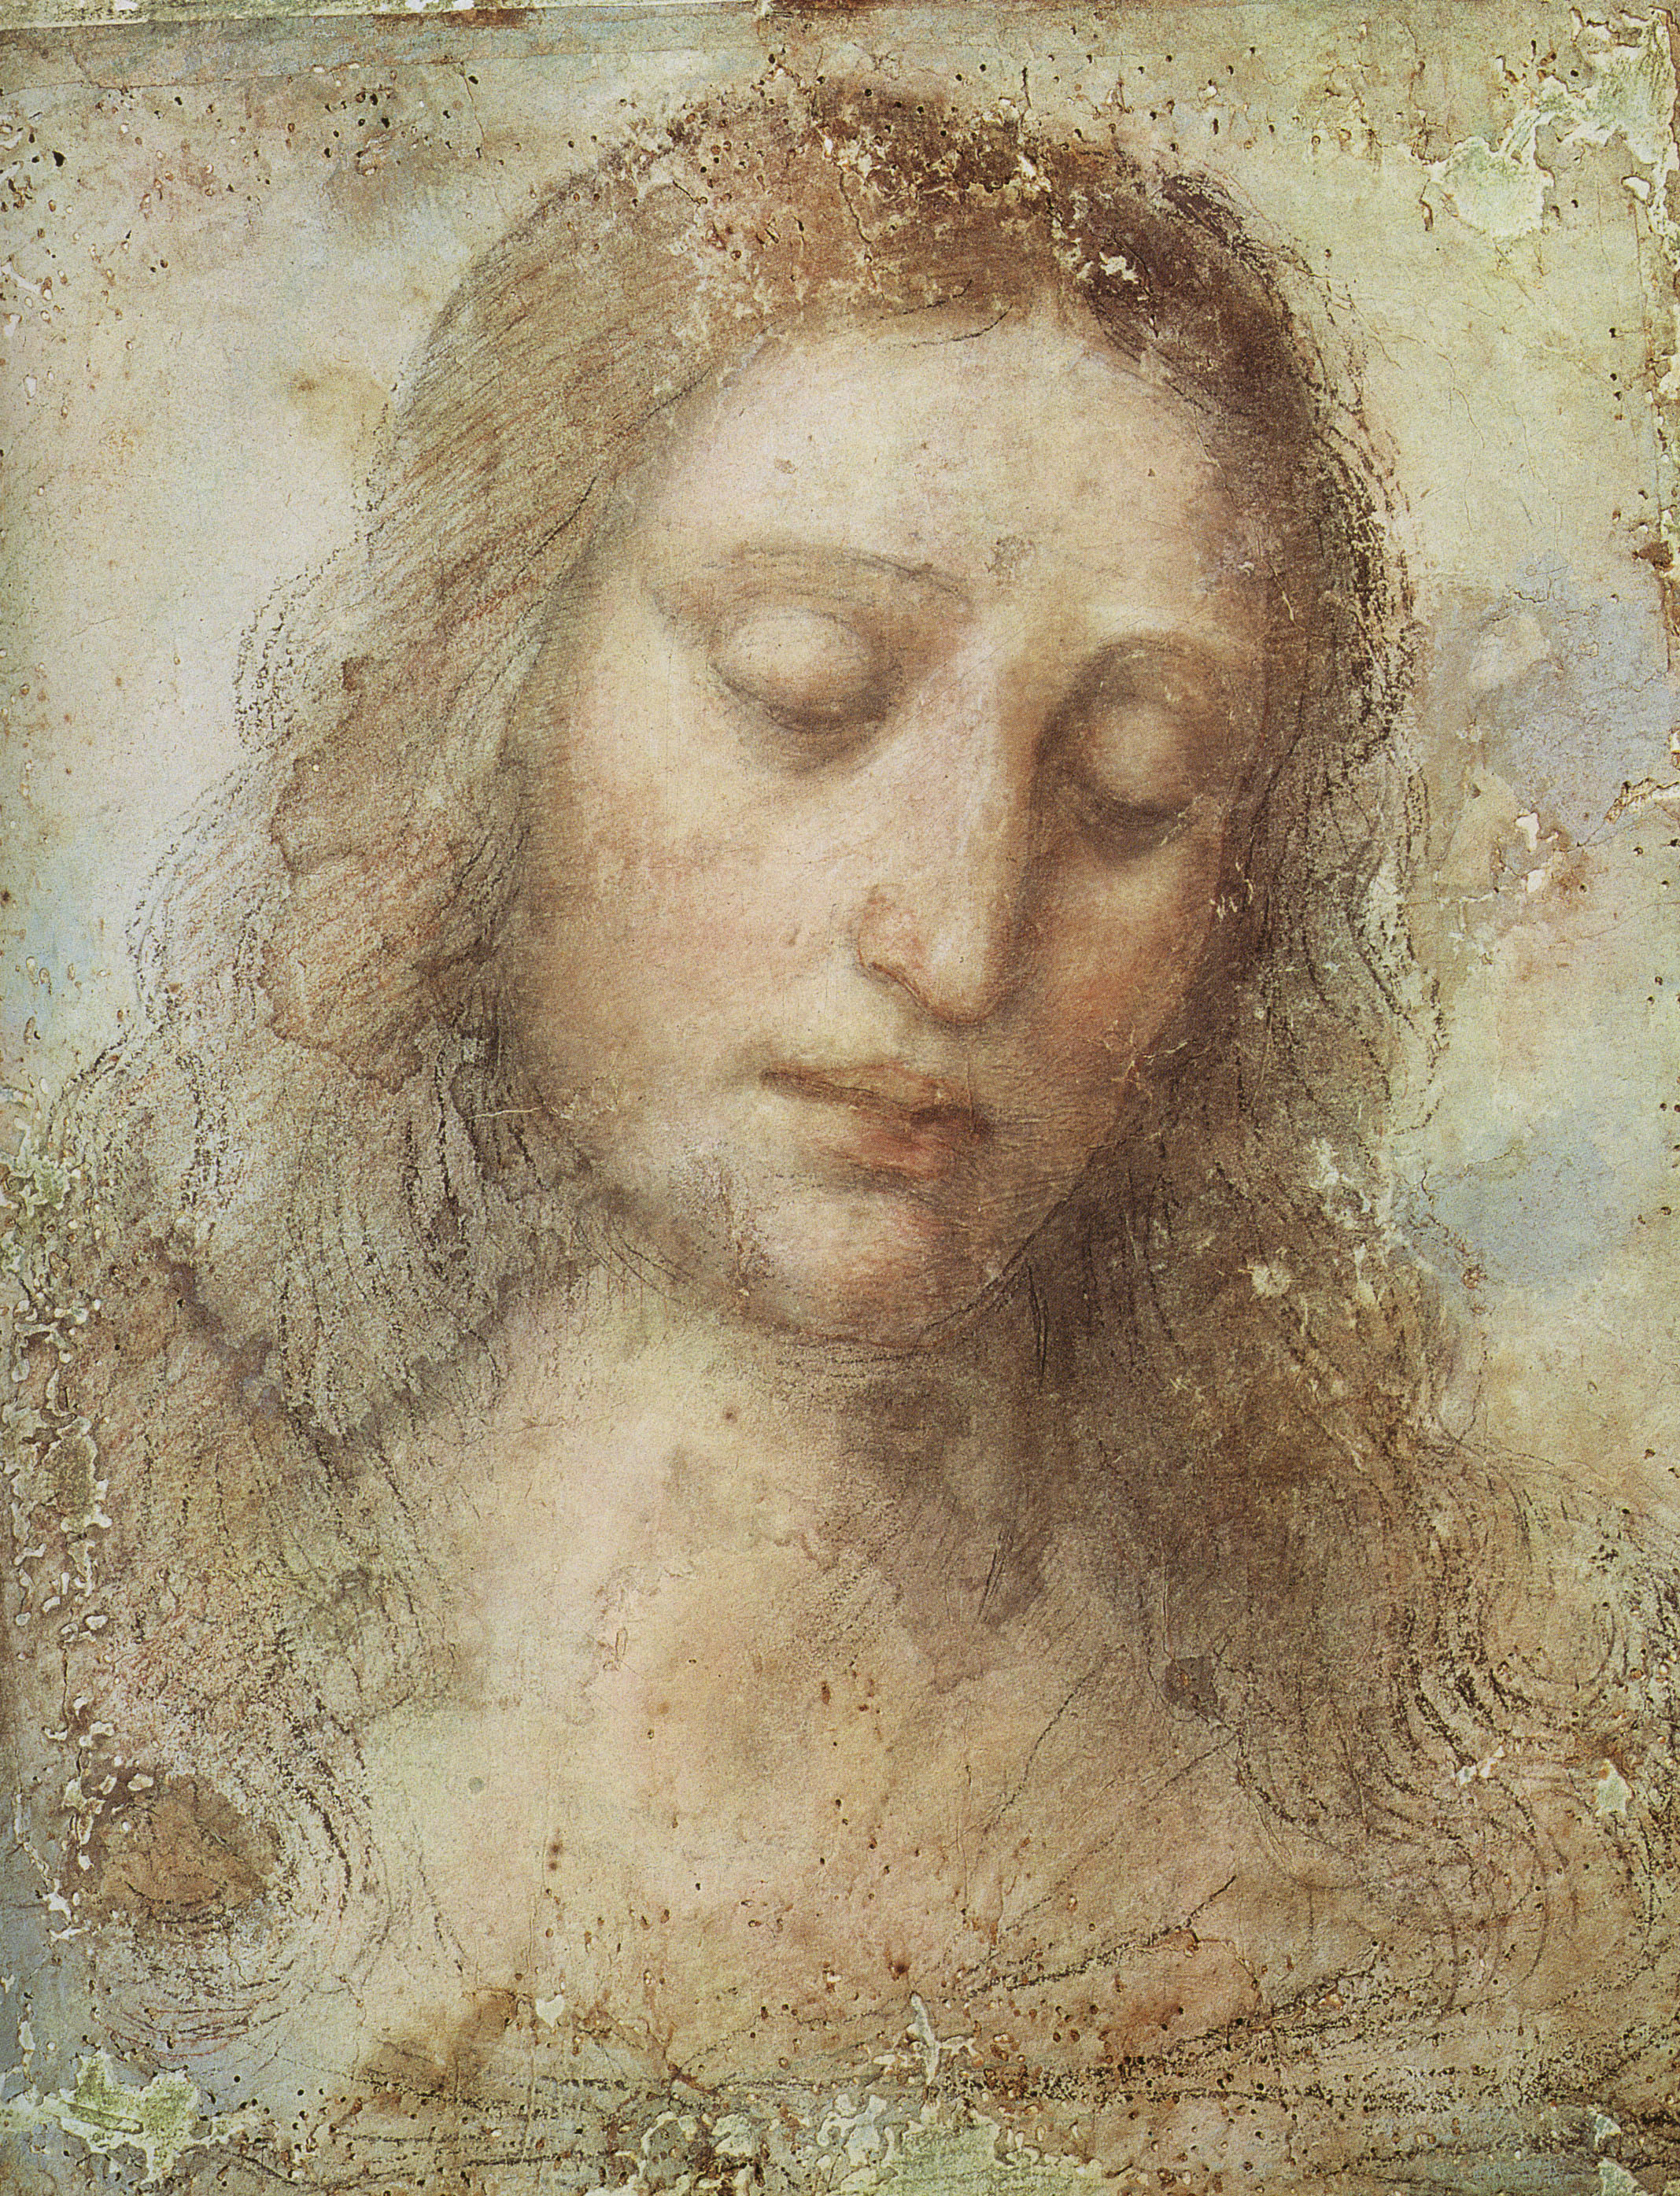 Cabeza de Cristo by Leonardo da Vinci - c.1495 Musée des Beaux-Arts de Strasbourg